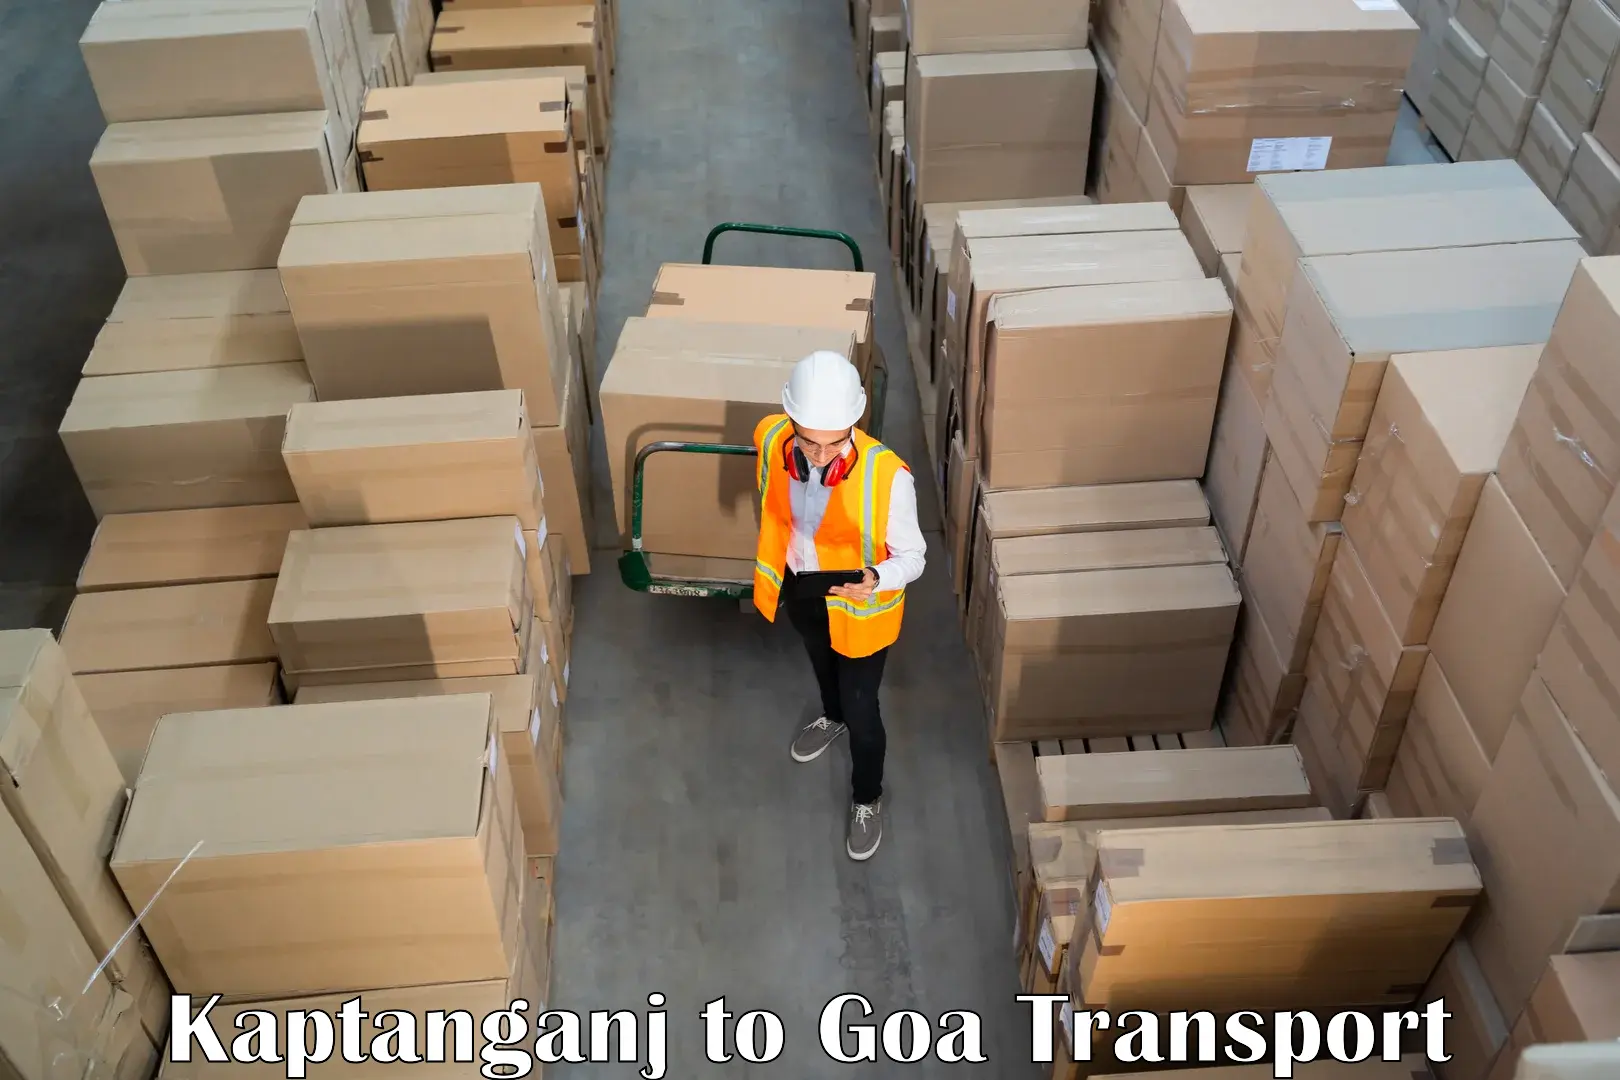 Transport in sharing Kaptanganj to NIT Goa